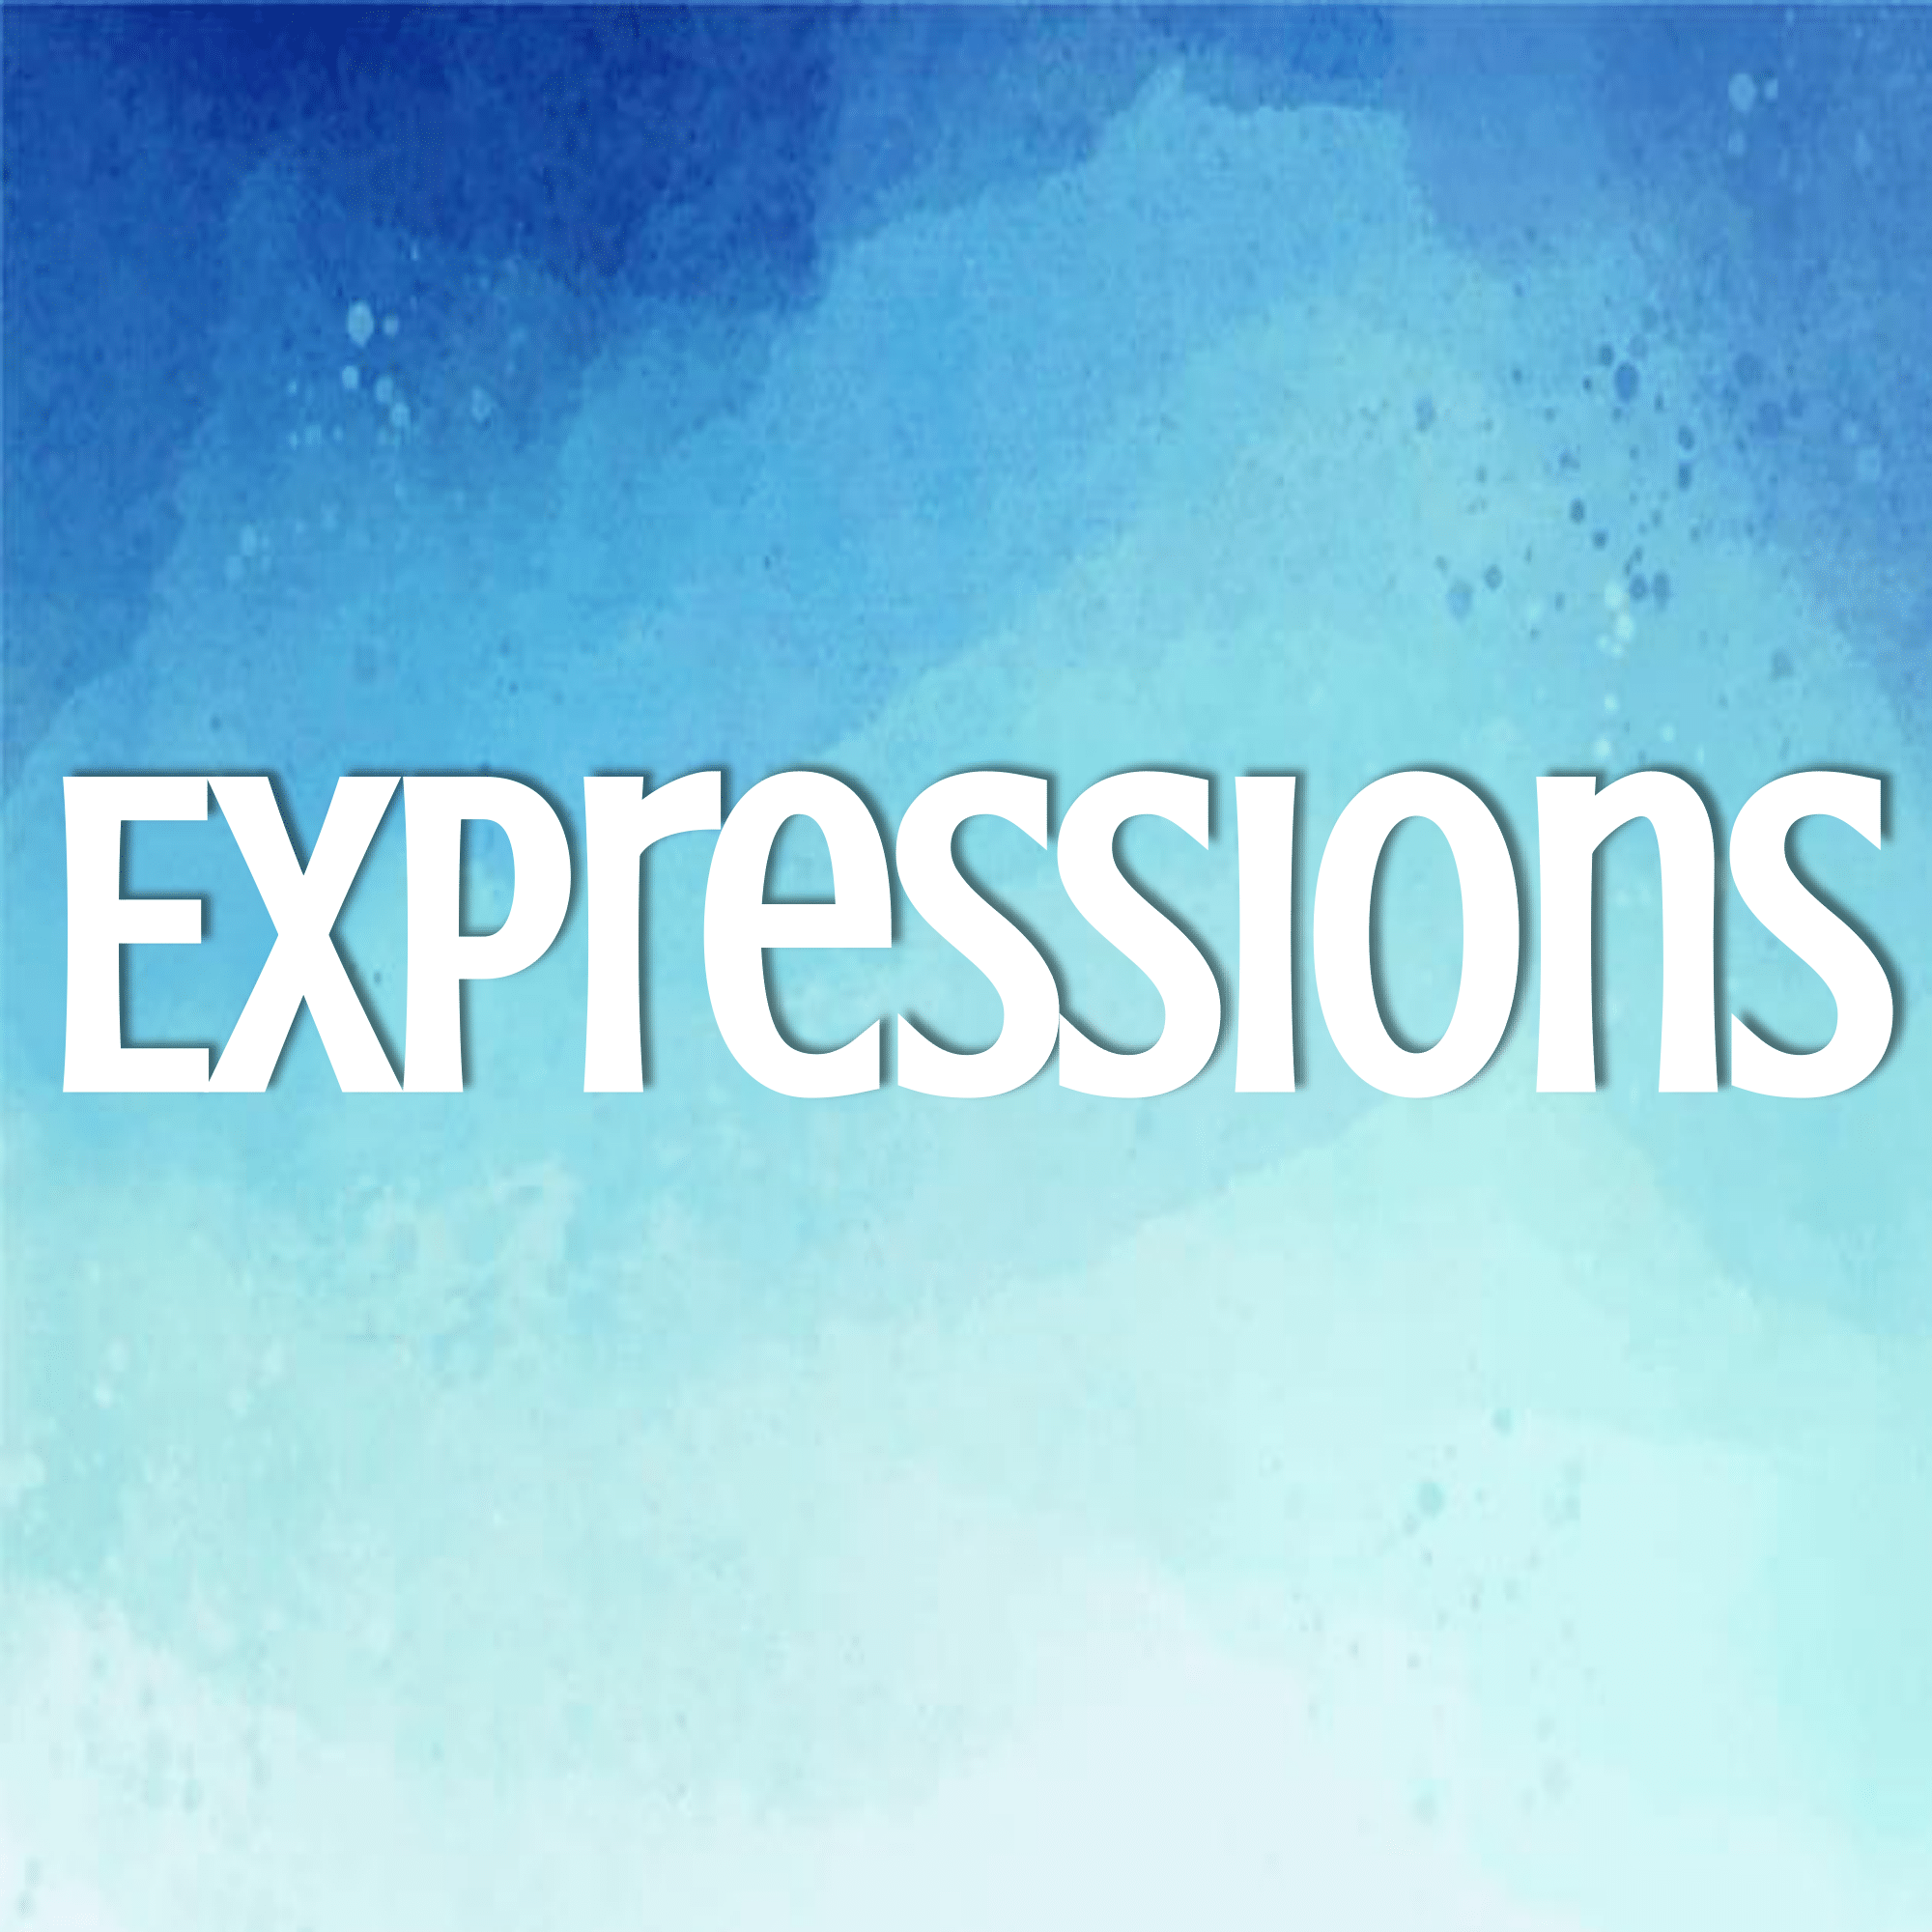 Equivalent Expressions - Class 7 - Quizizz